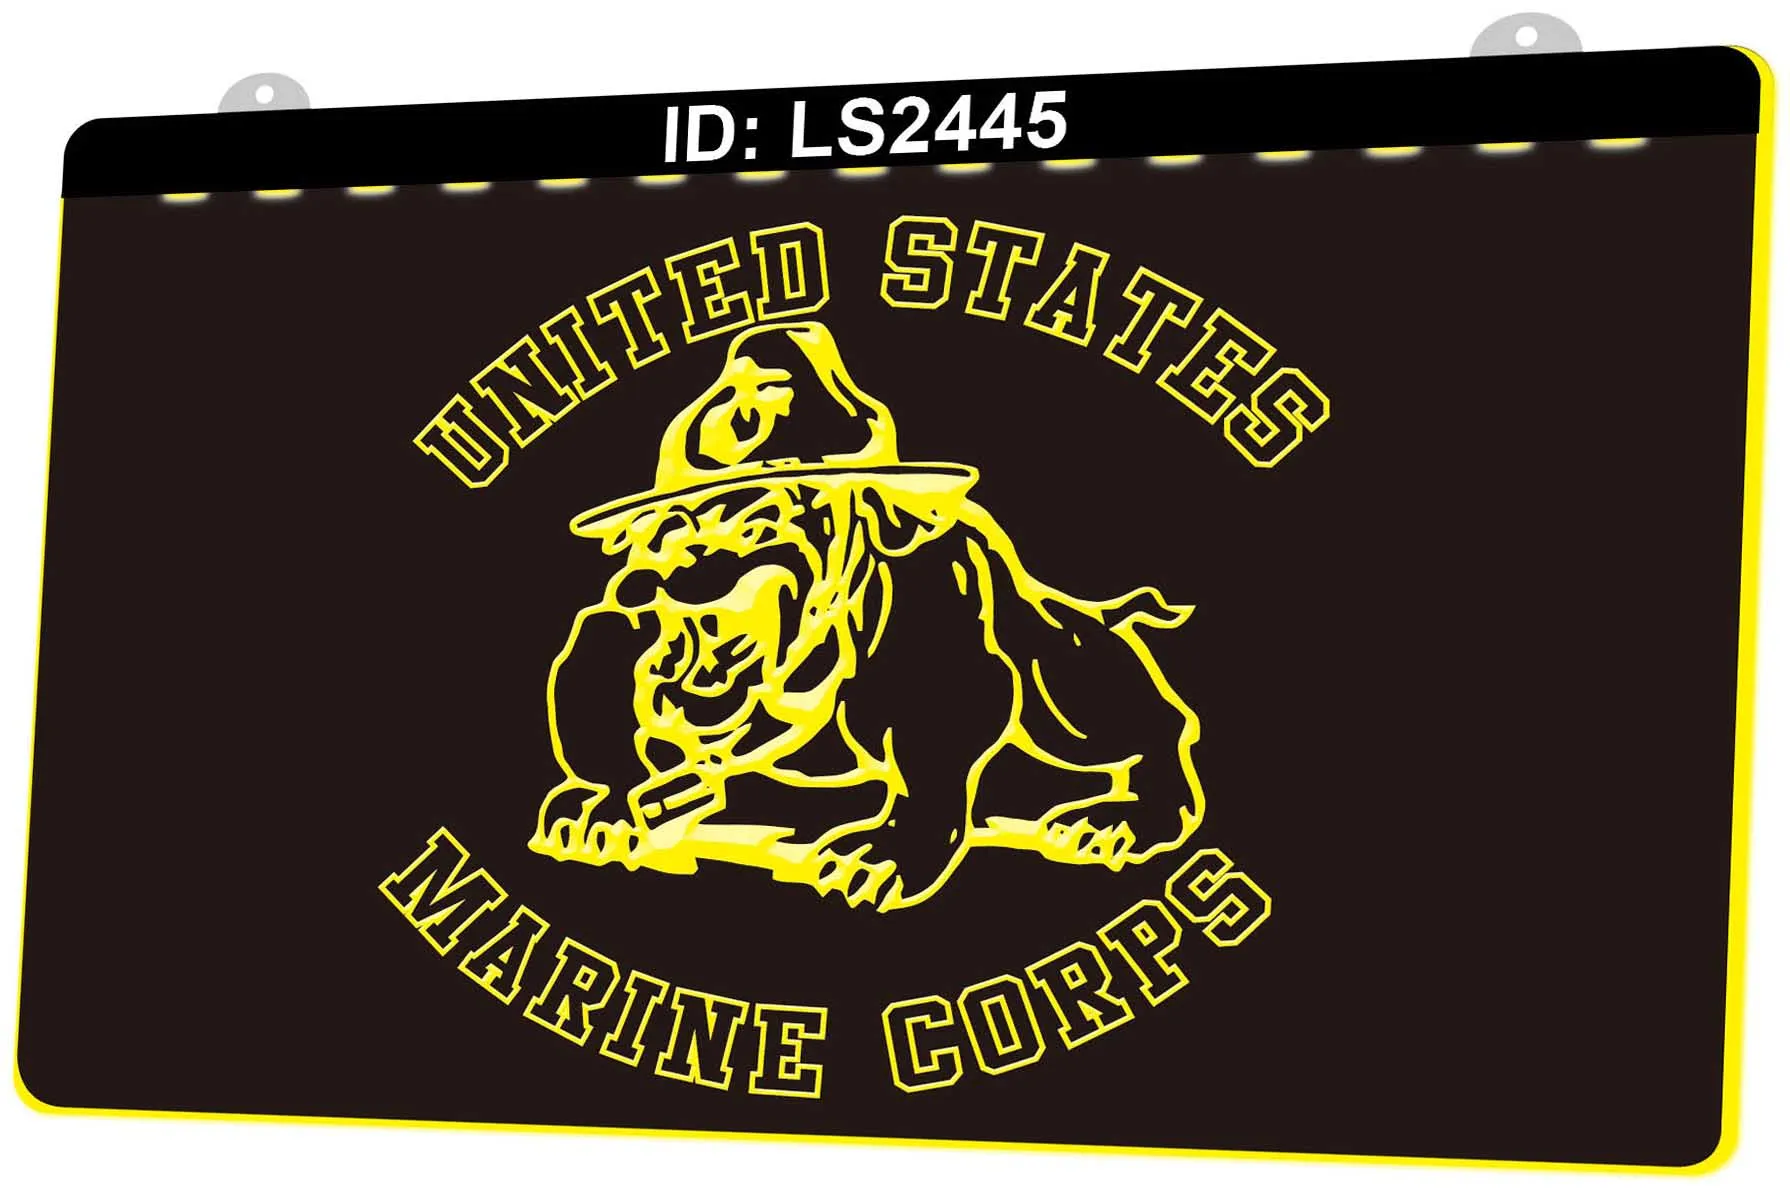 LS2445 Vendita al dettaglio all'ingrosso del segno della luce del LED dell'incisione 3D del bulldog del Corpo dei Marines degli Stati Uniti